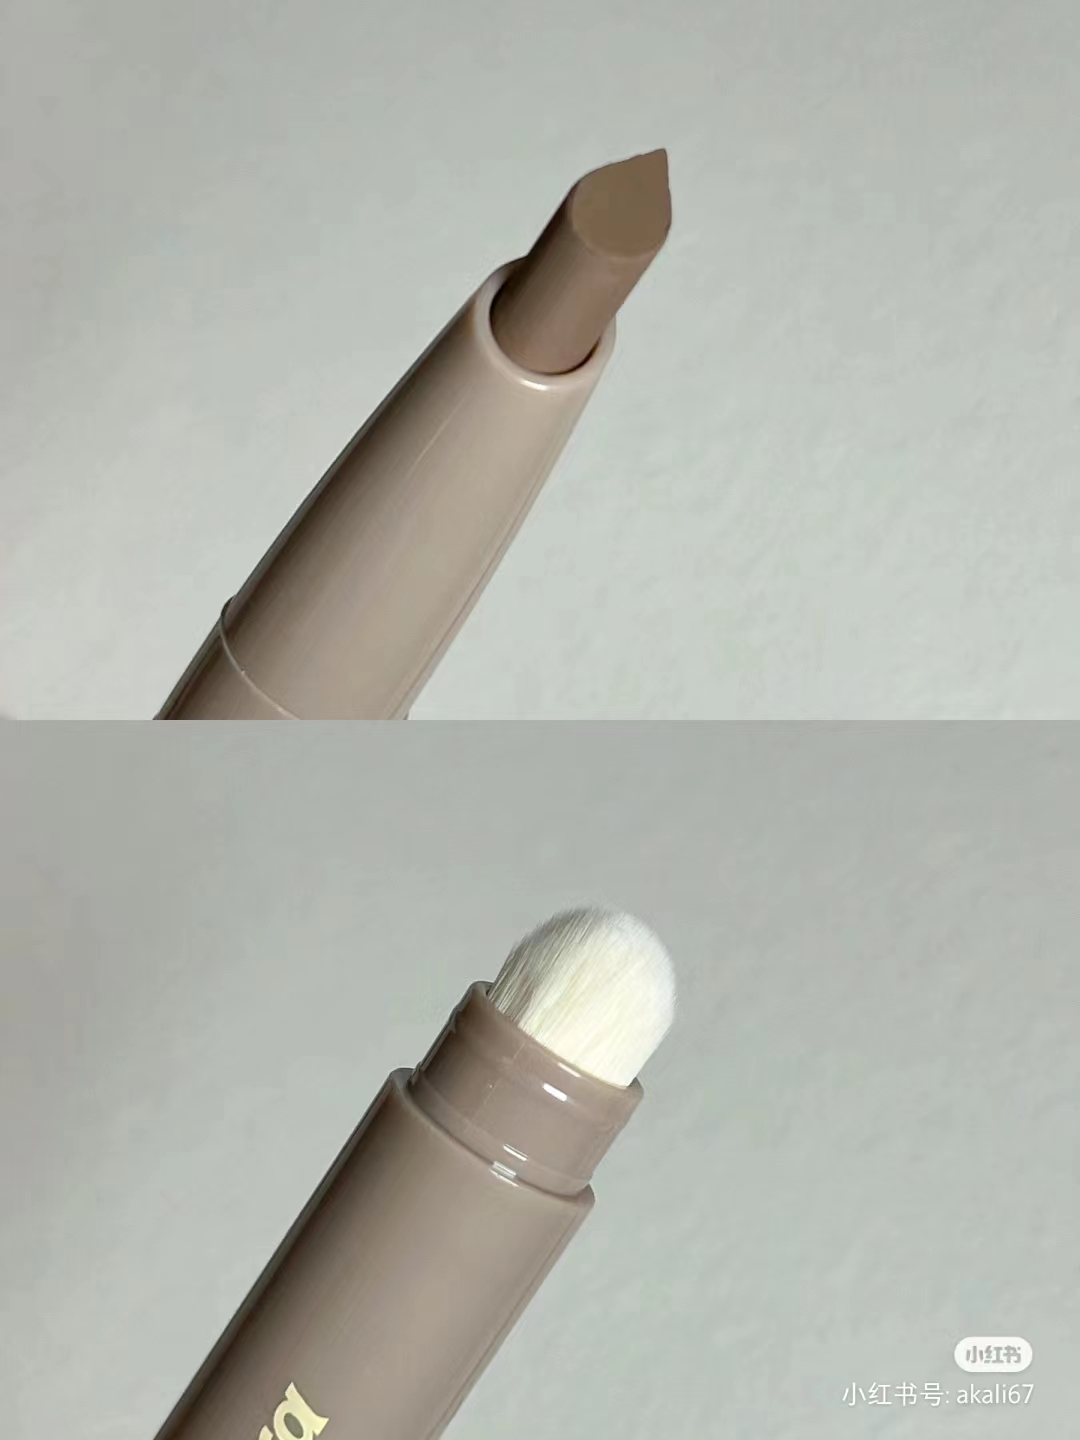 新品peripera菲丽菲拉韩国单色修容棒阴影鼻影立体自然不脱妆带刷-图2